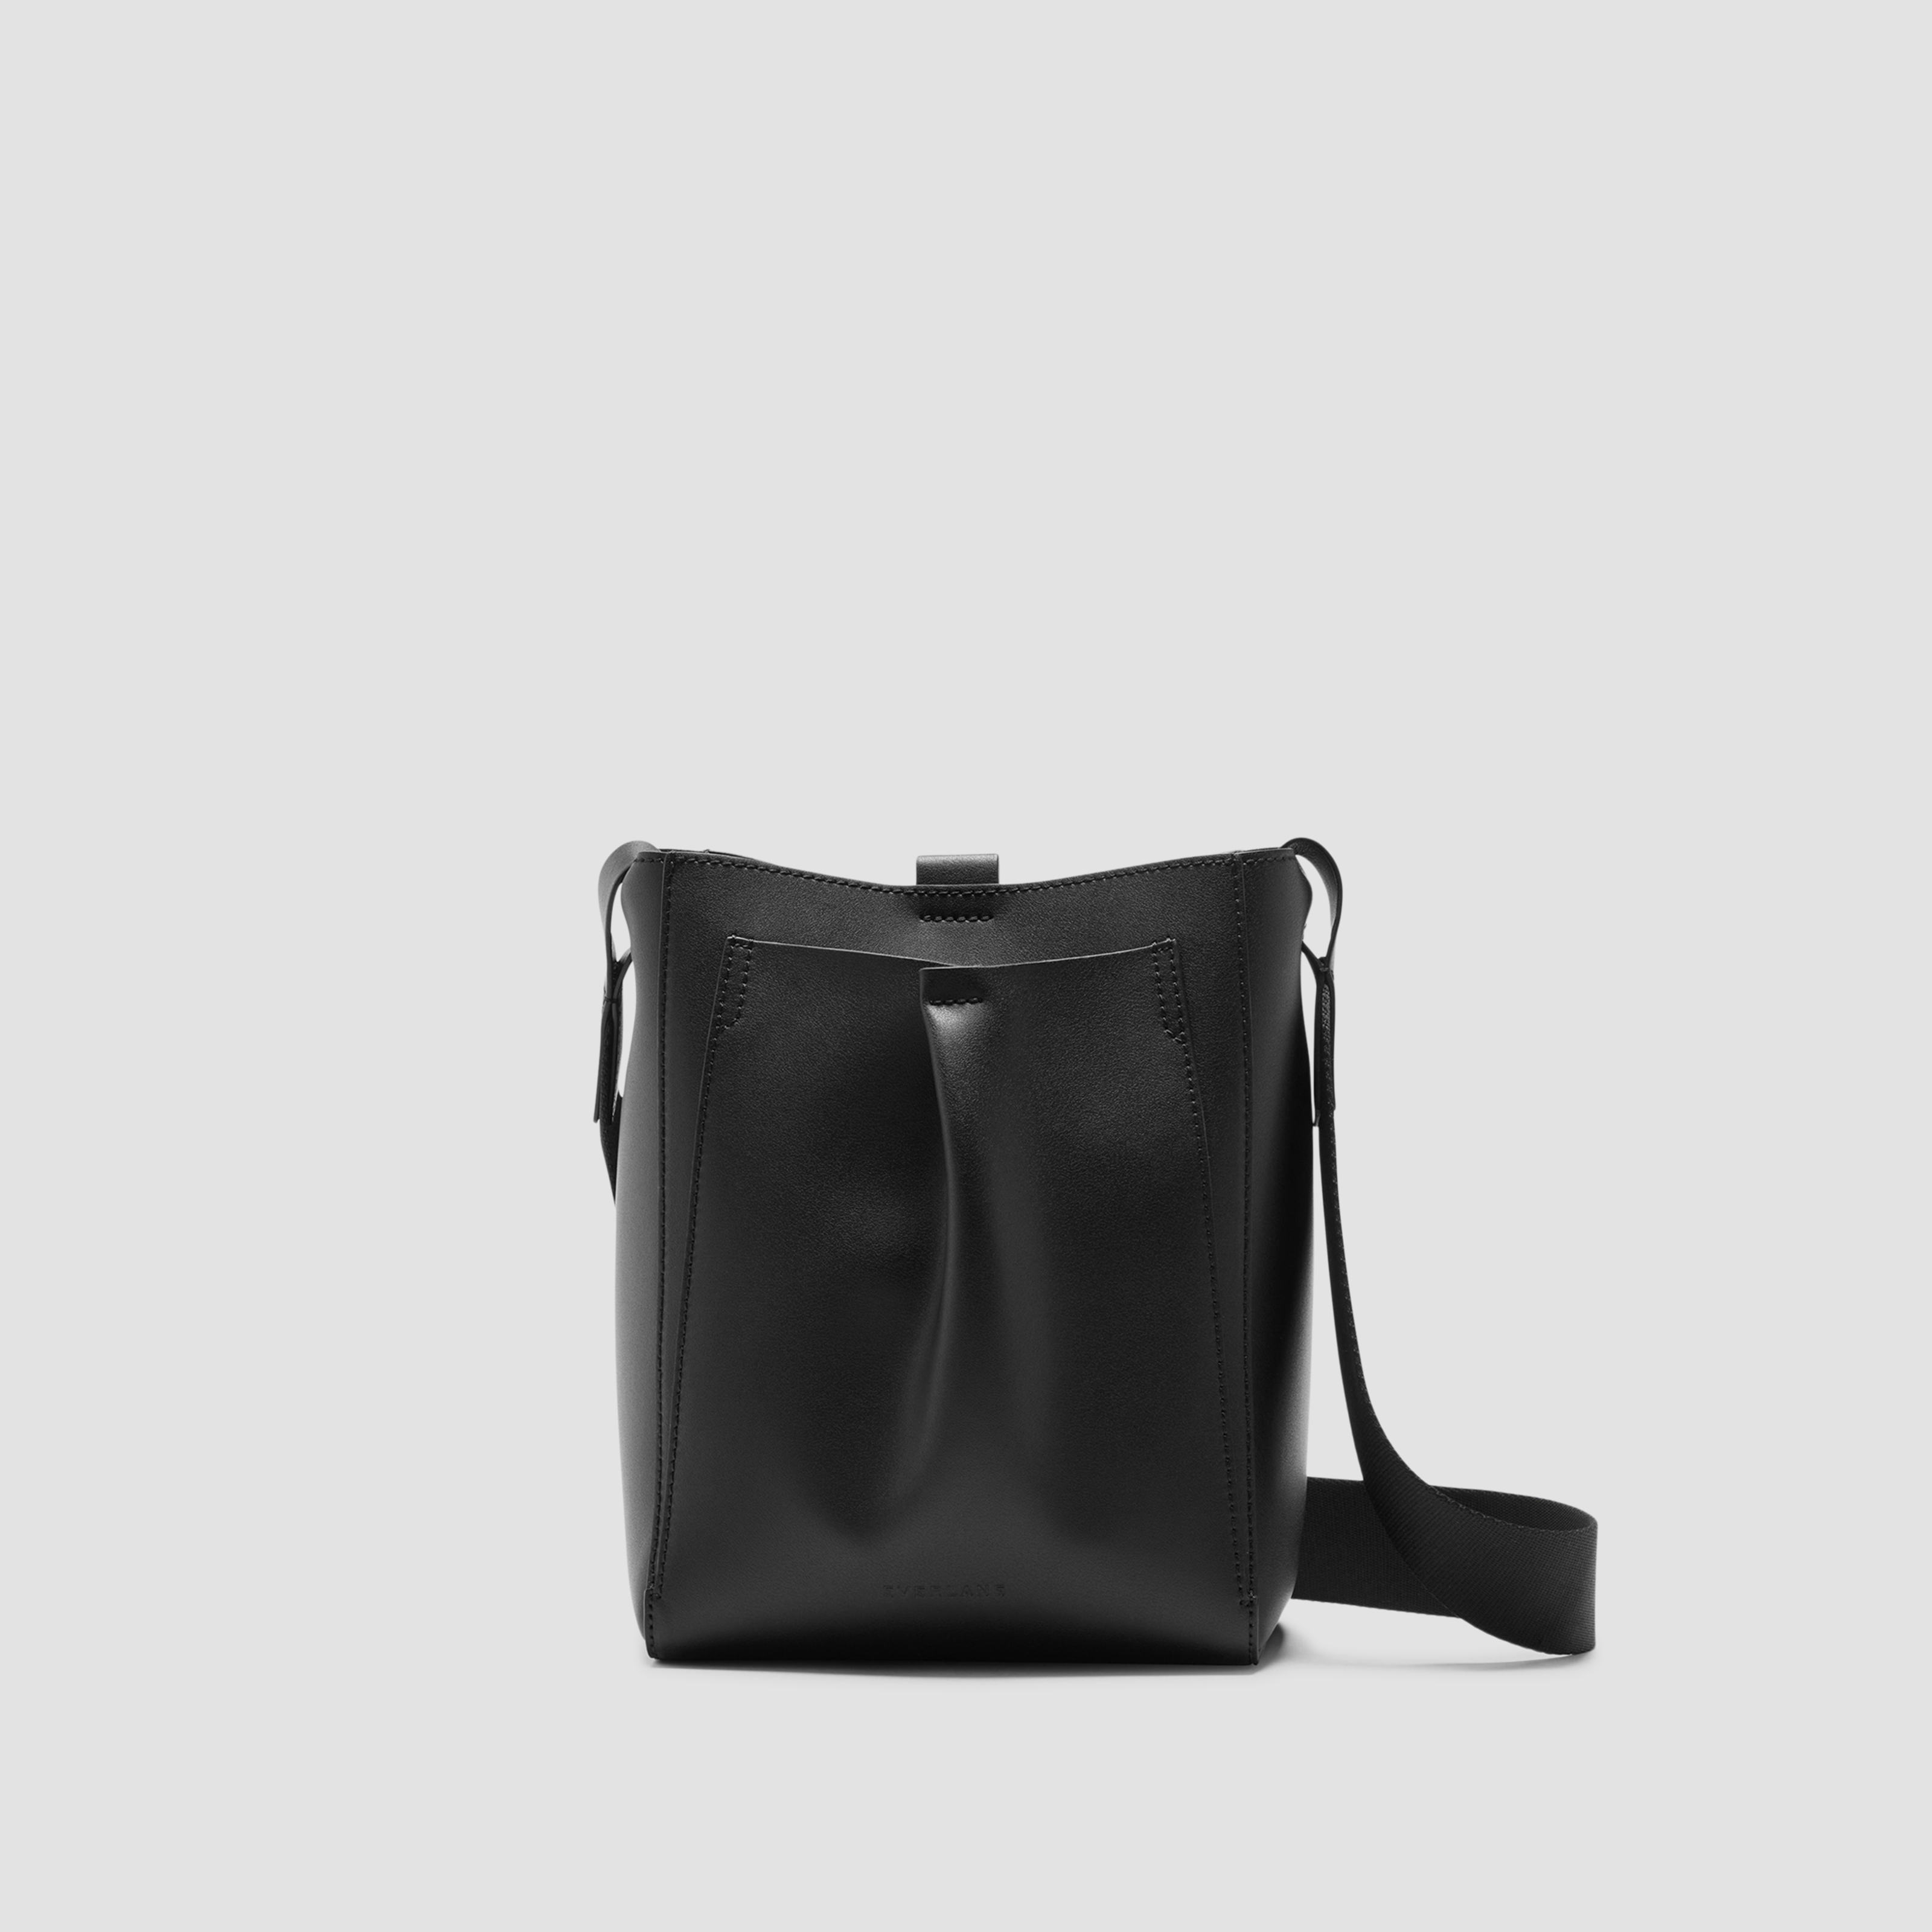 mini studio bag by everlane in black